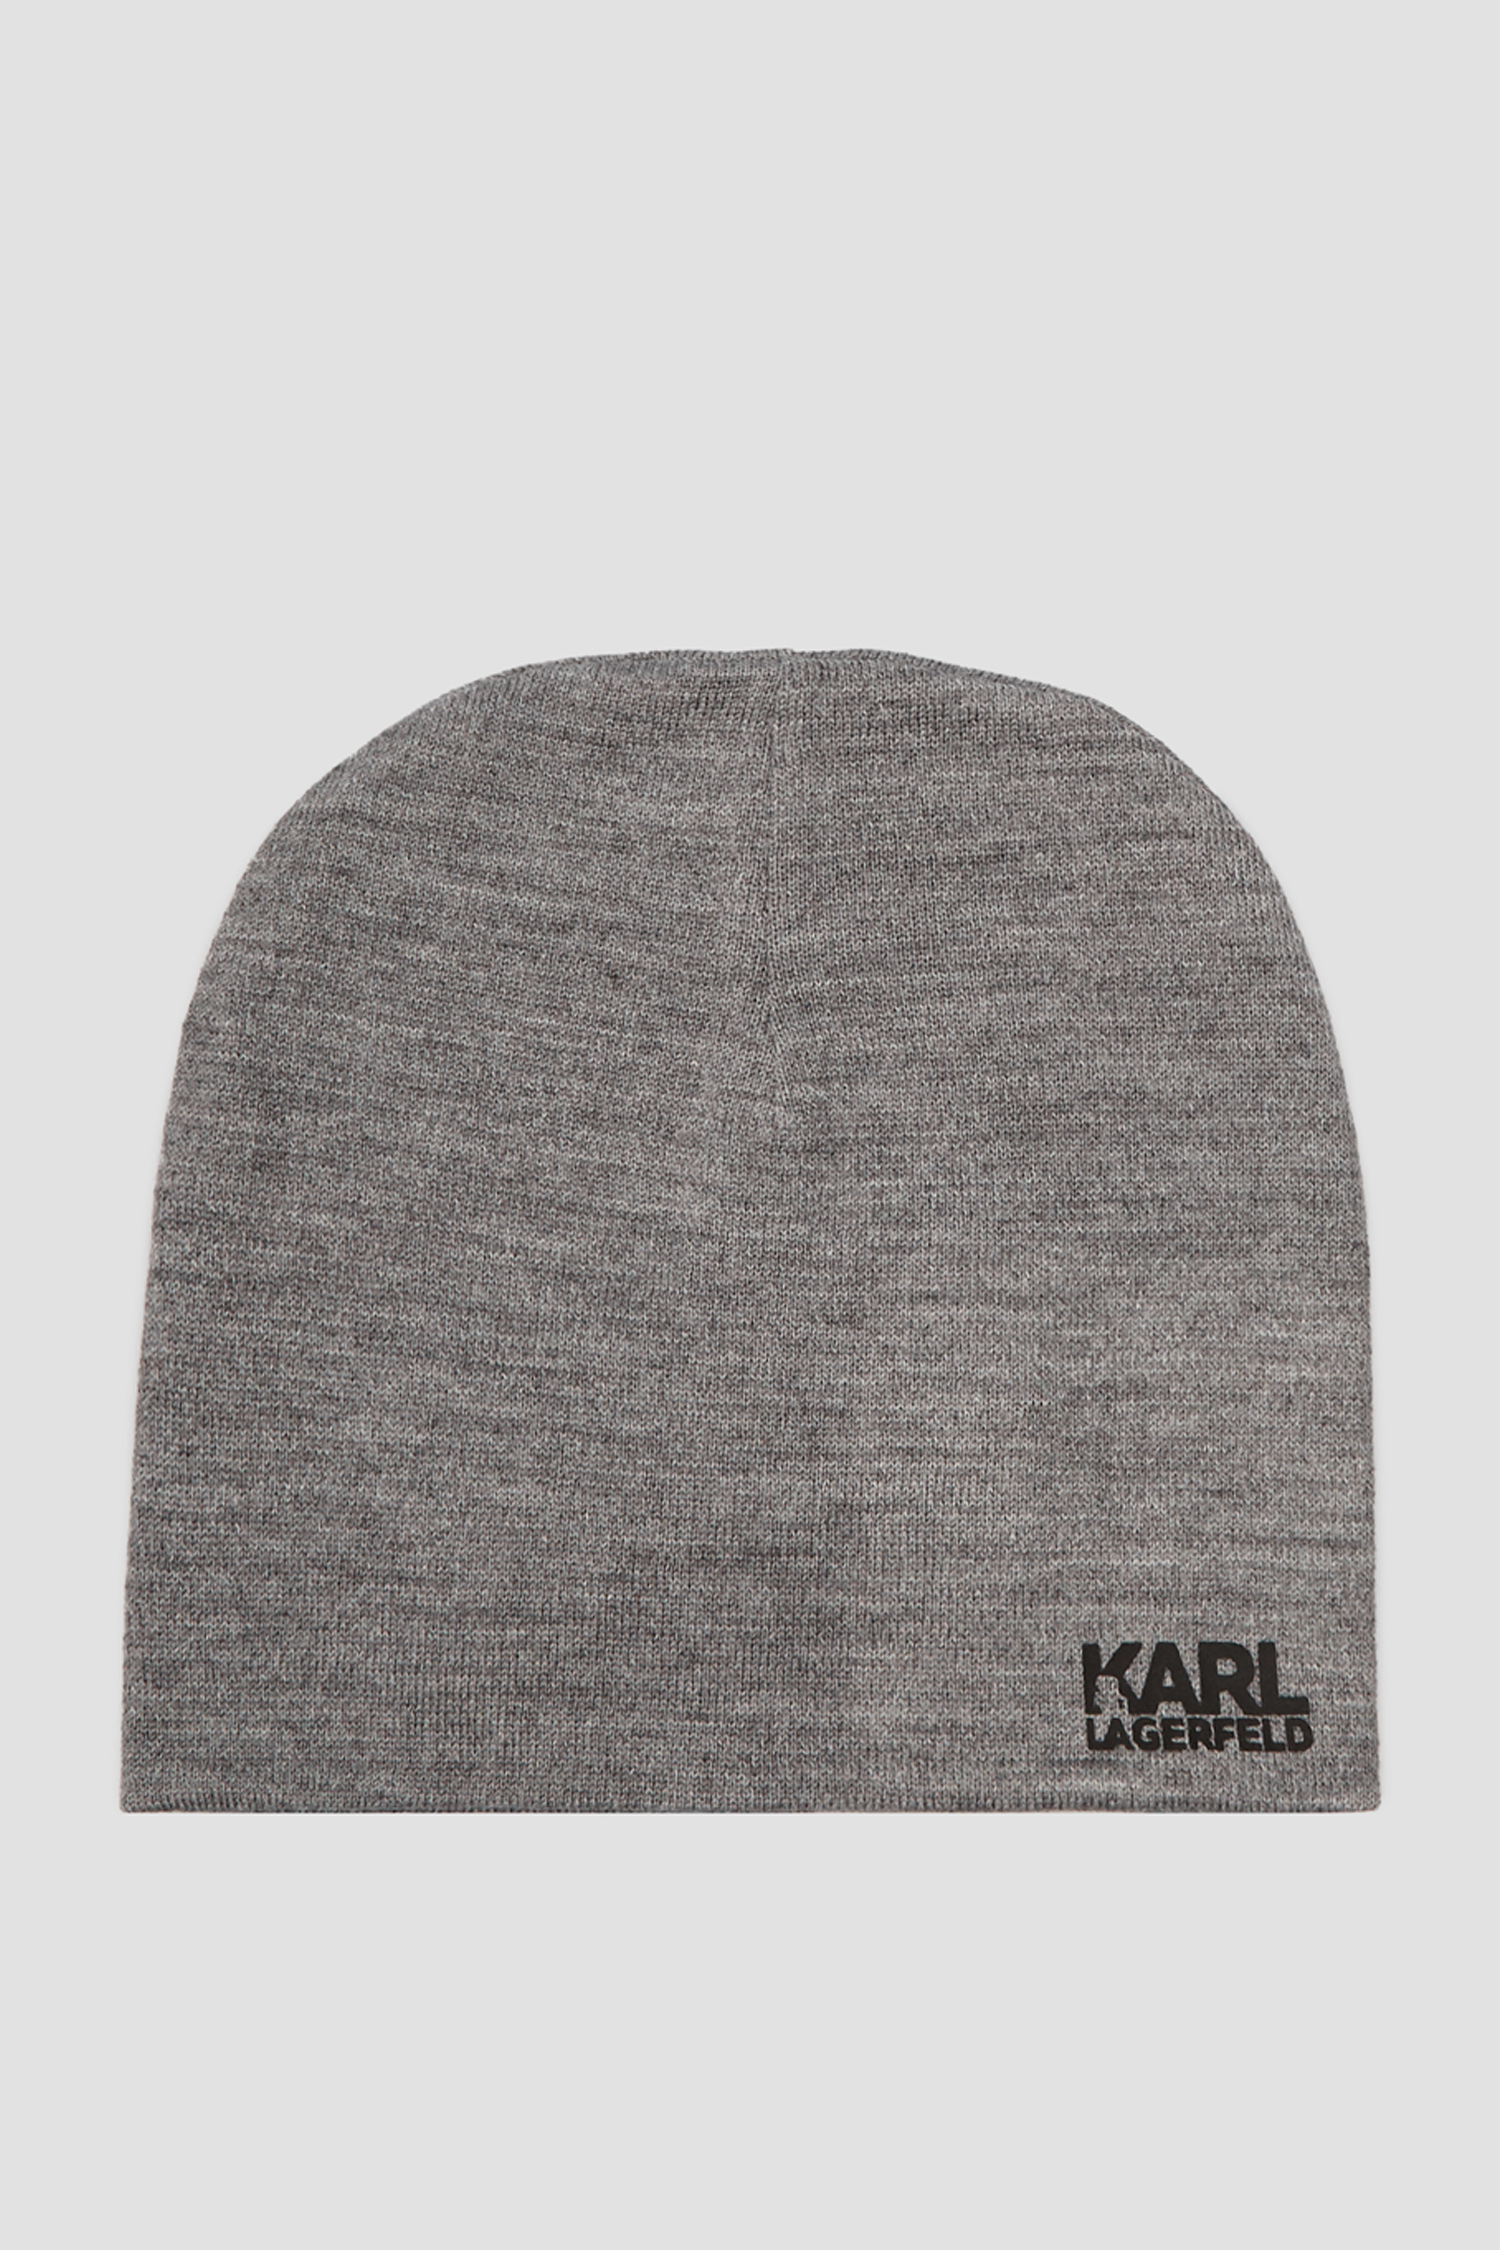 Мужская серая шерстяная шапка Karl Lagerfeld 512324.805601;960